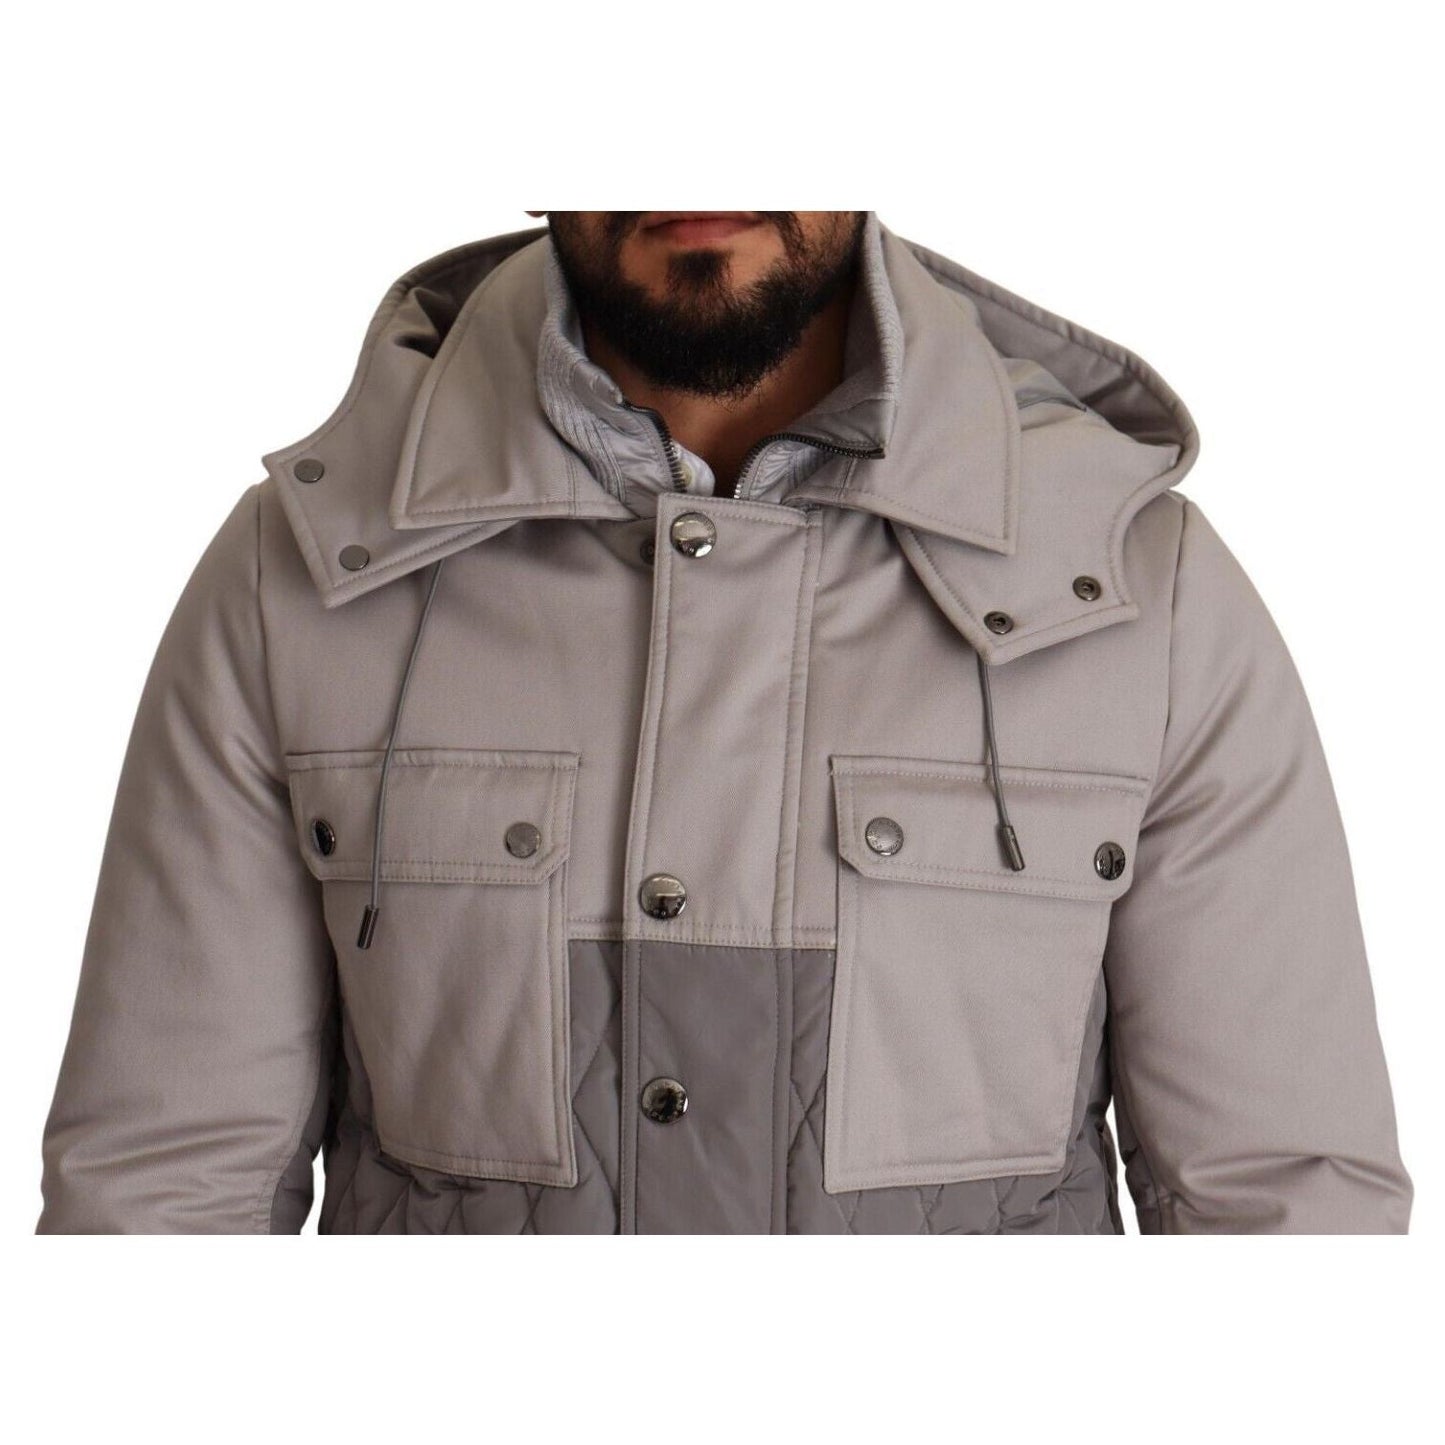 Dolce & Gabbana Elegant Lightweight Gray Windbreaker Jacket gray-cotton-windbreaker-hooded-parka-jacket s-l1600-2-245-bf43a232-f2d_cb14d0fa-3b19-4093-a90e-0c83e07a9d1e.jpg